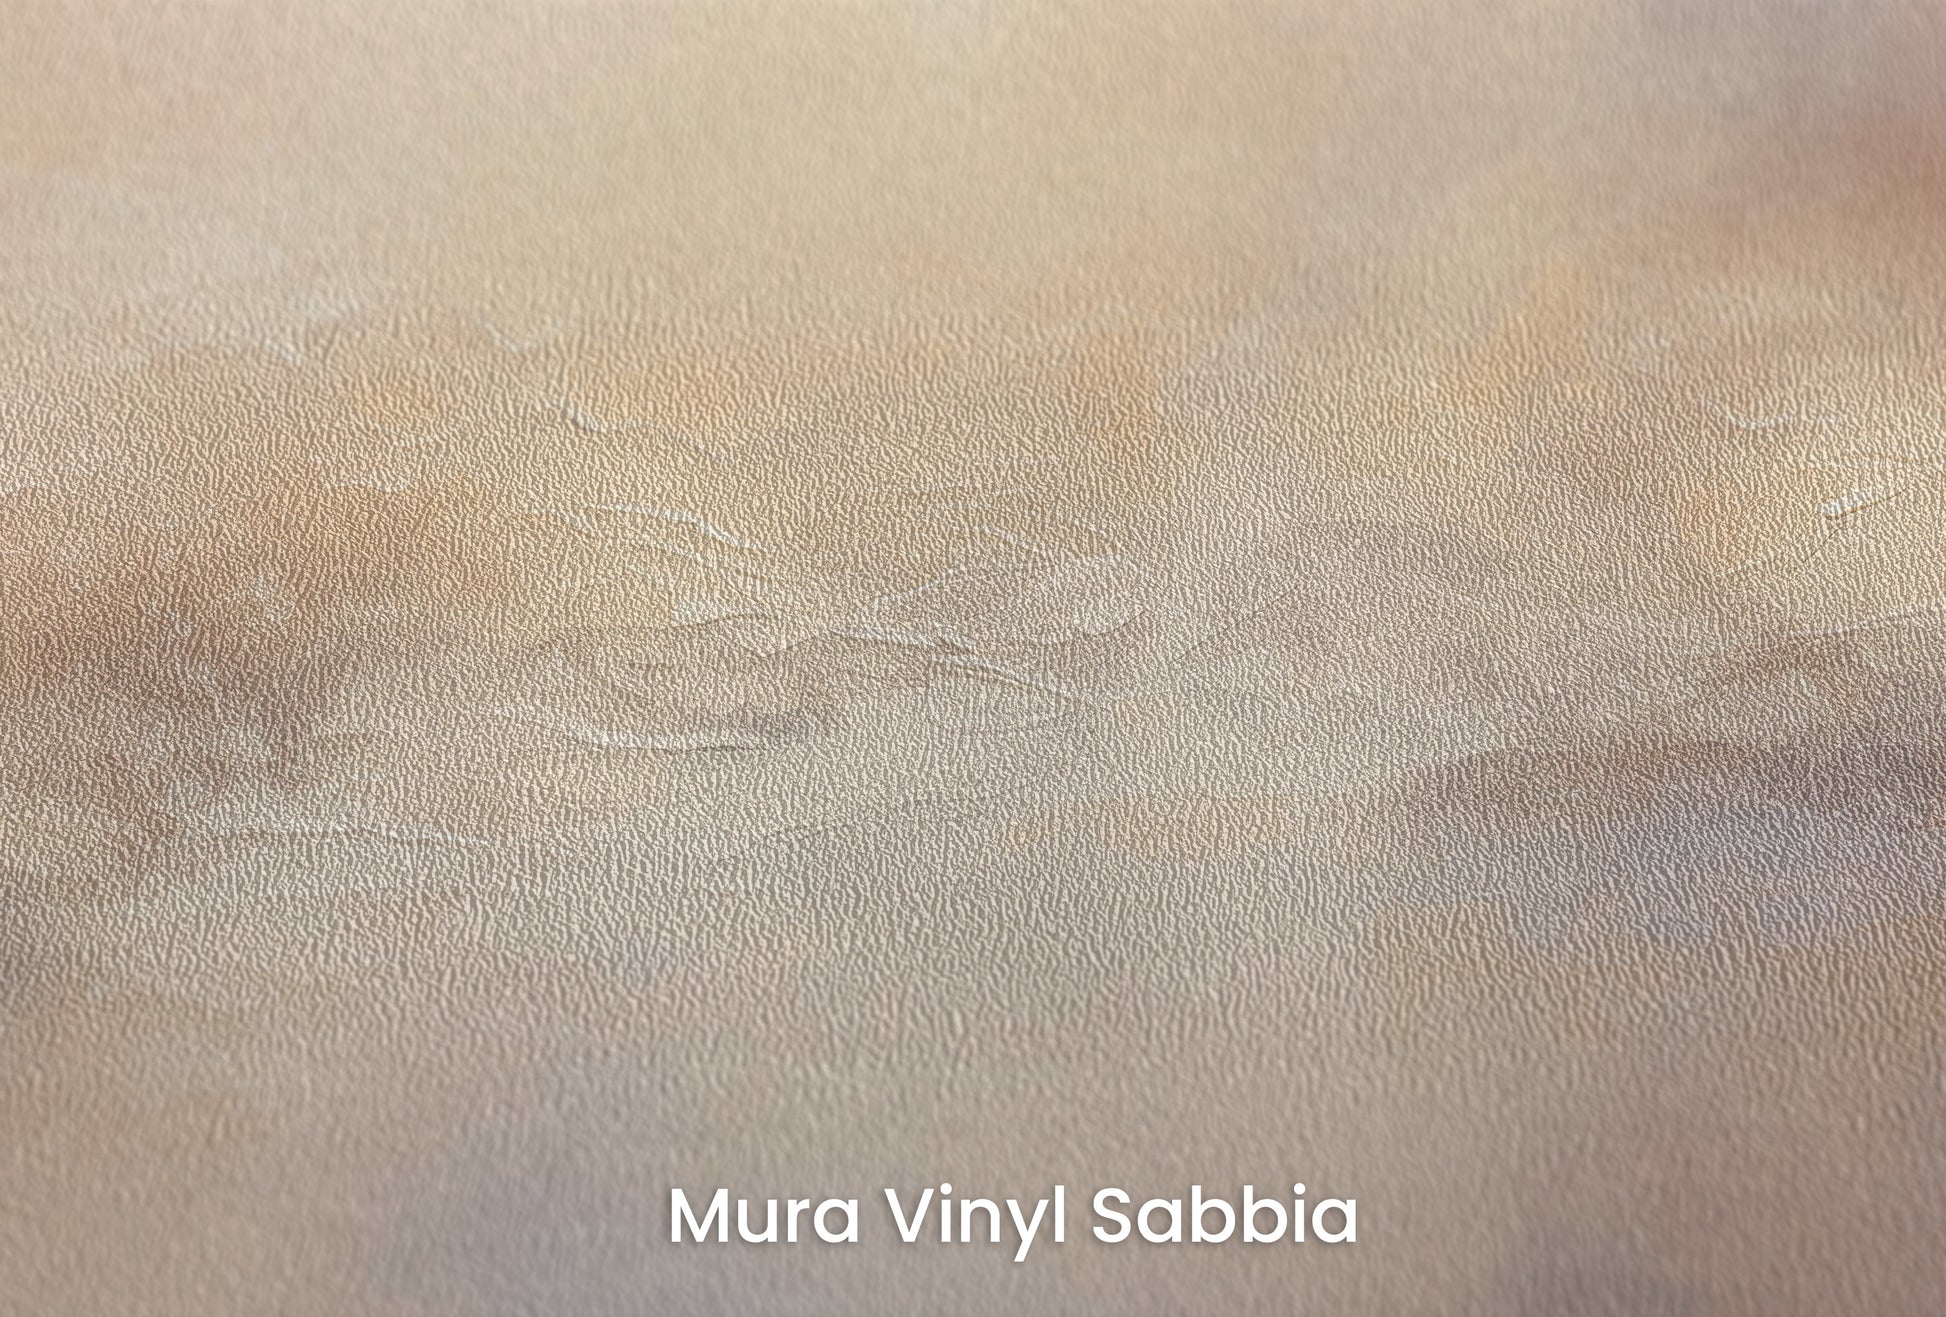 Zbliżenie na artystyczną fototapetę o nazwie MISTY MOUNTAIN MORN na podłożu Mura Vinyl Sabbia struktura grubego ziarna piasku.